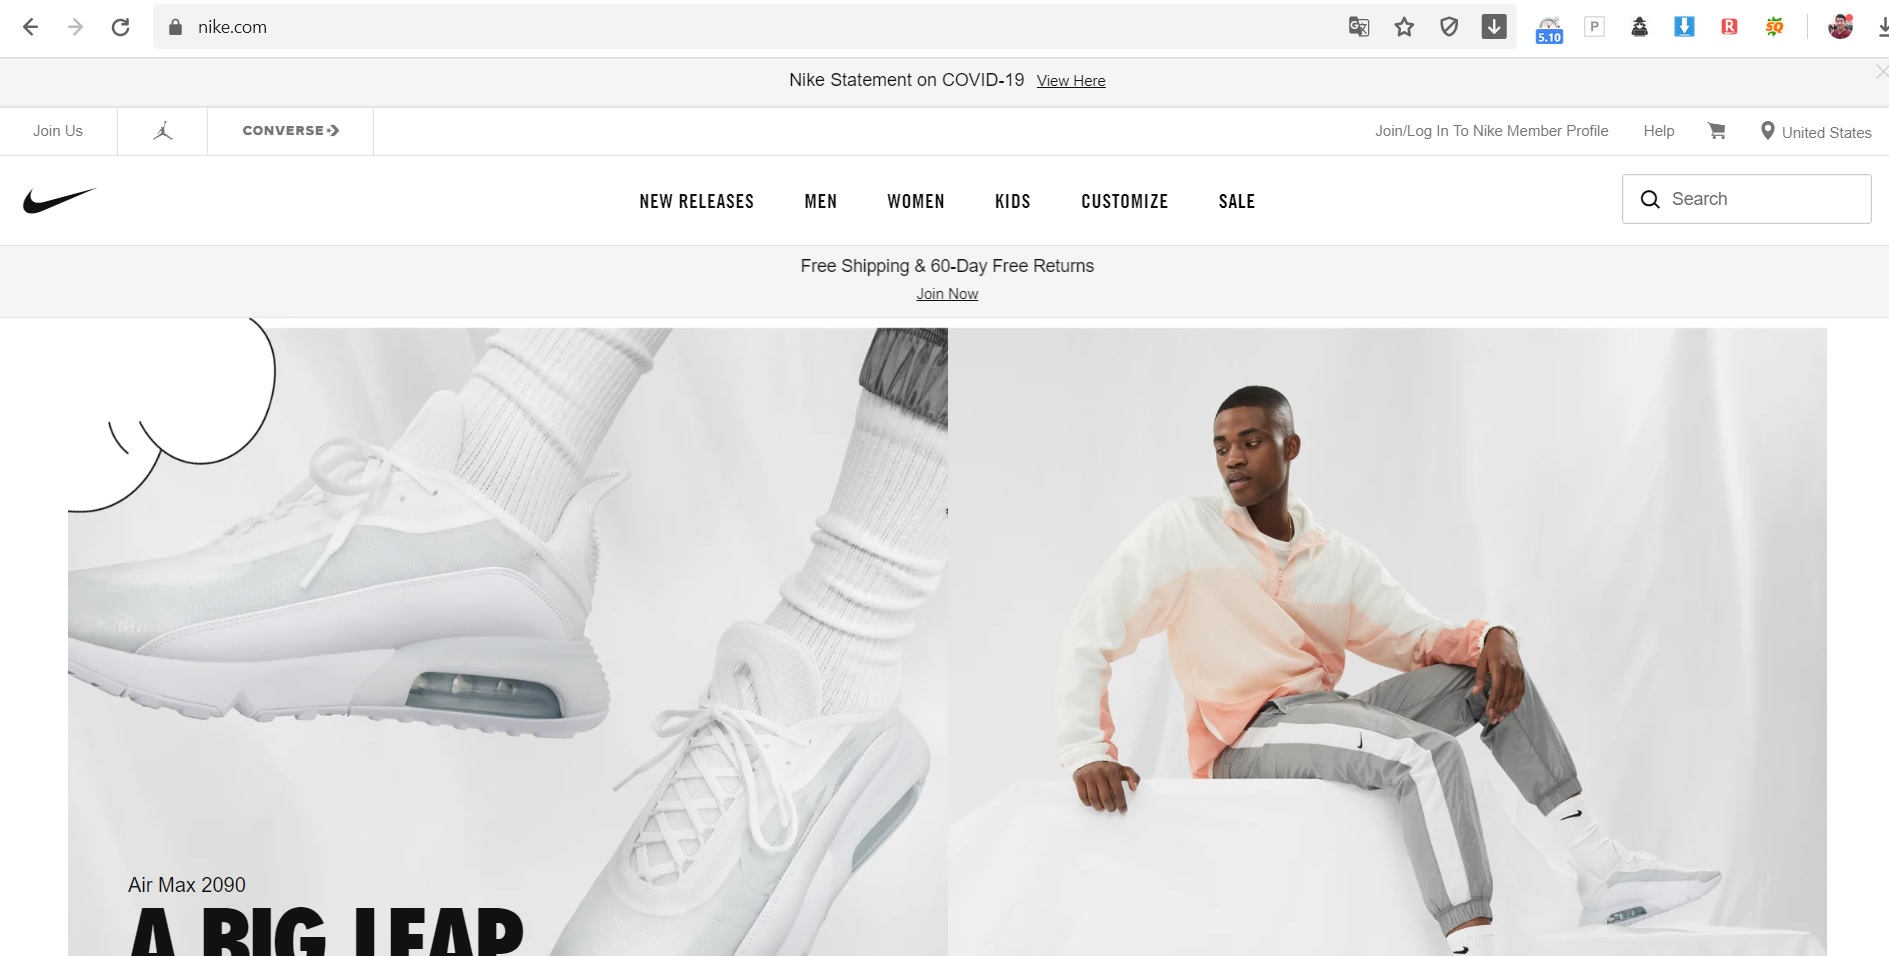 Bạn có thể mua hàng trên các trang của hãng như Nike.com nếu bạn biết cách